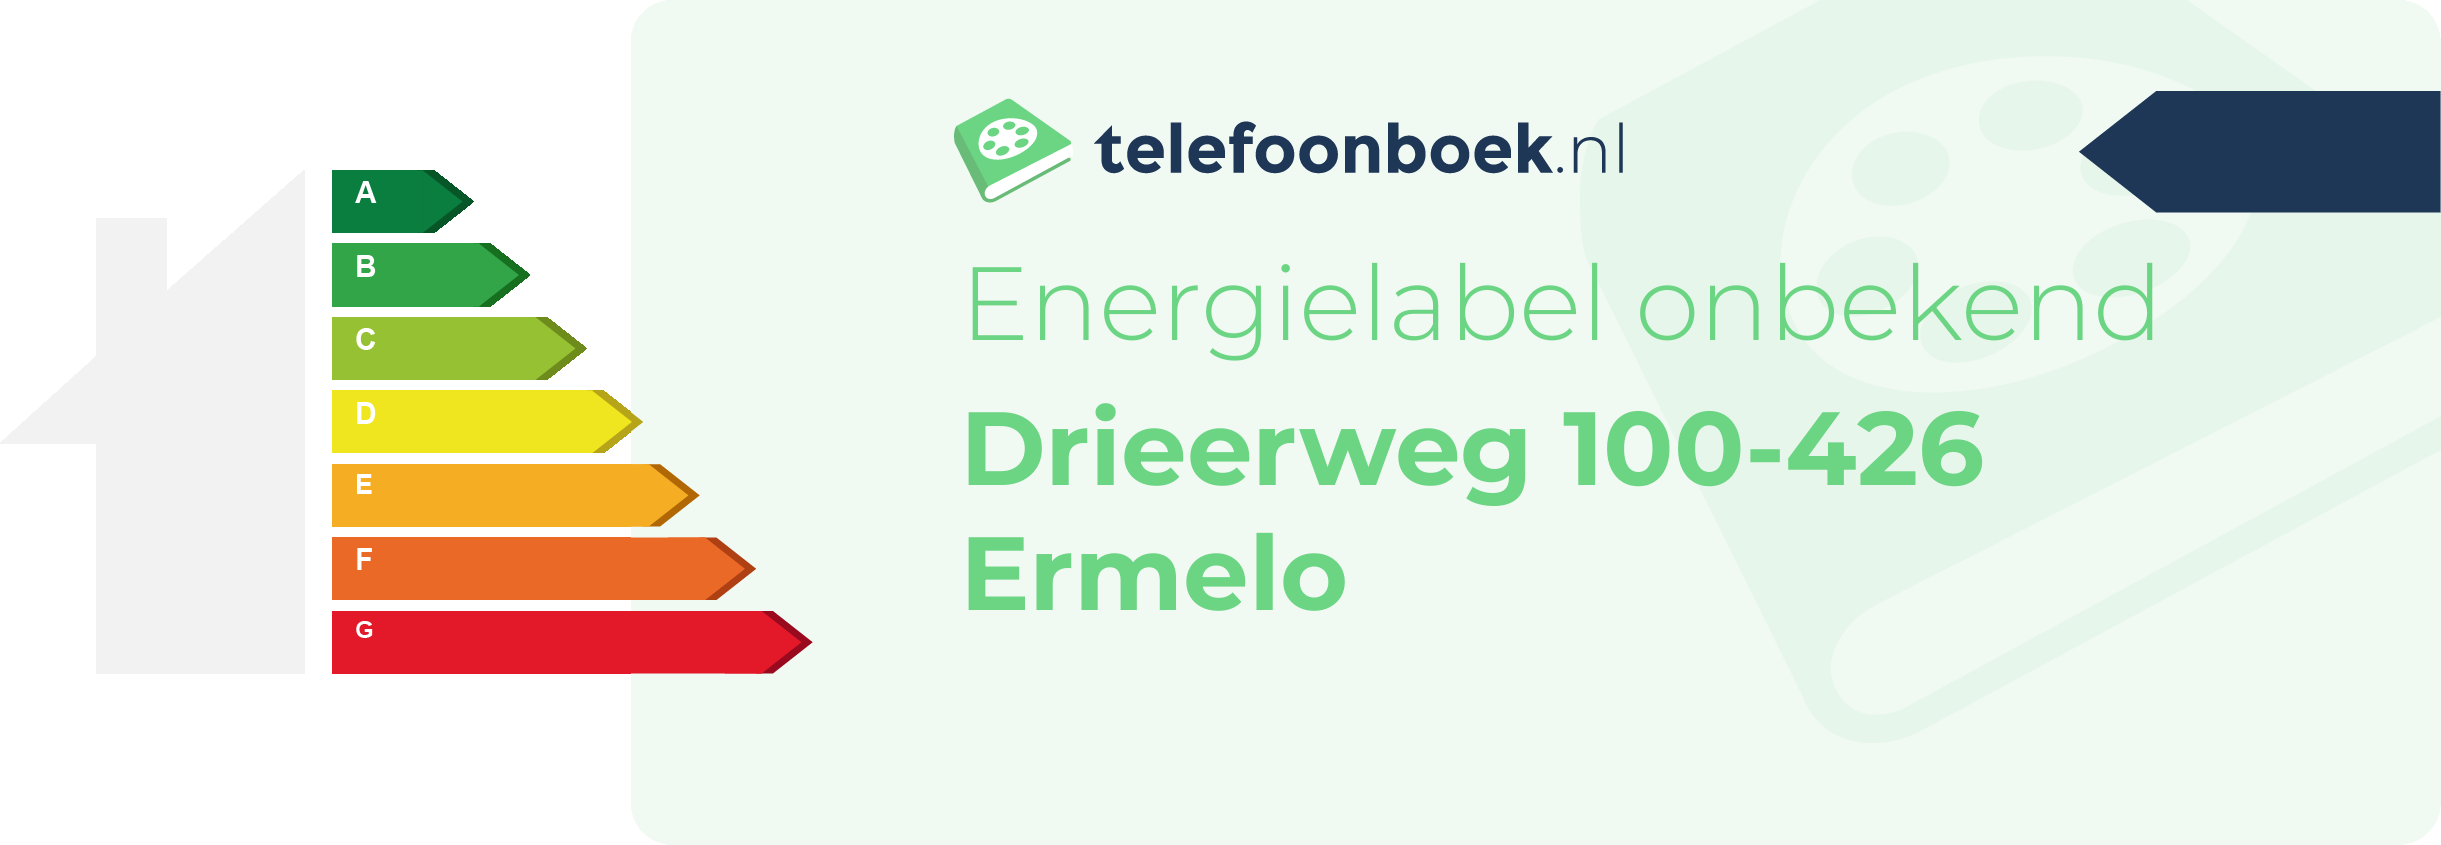 Energielabel Drieerweg 100-426 Ermelo